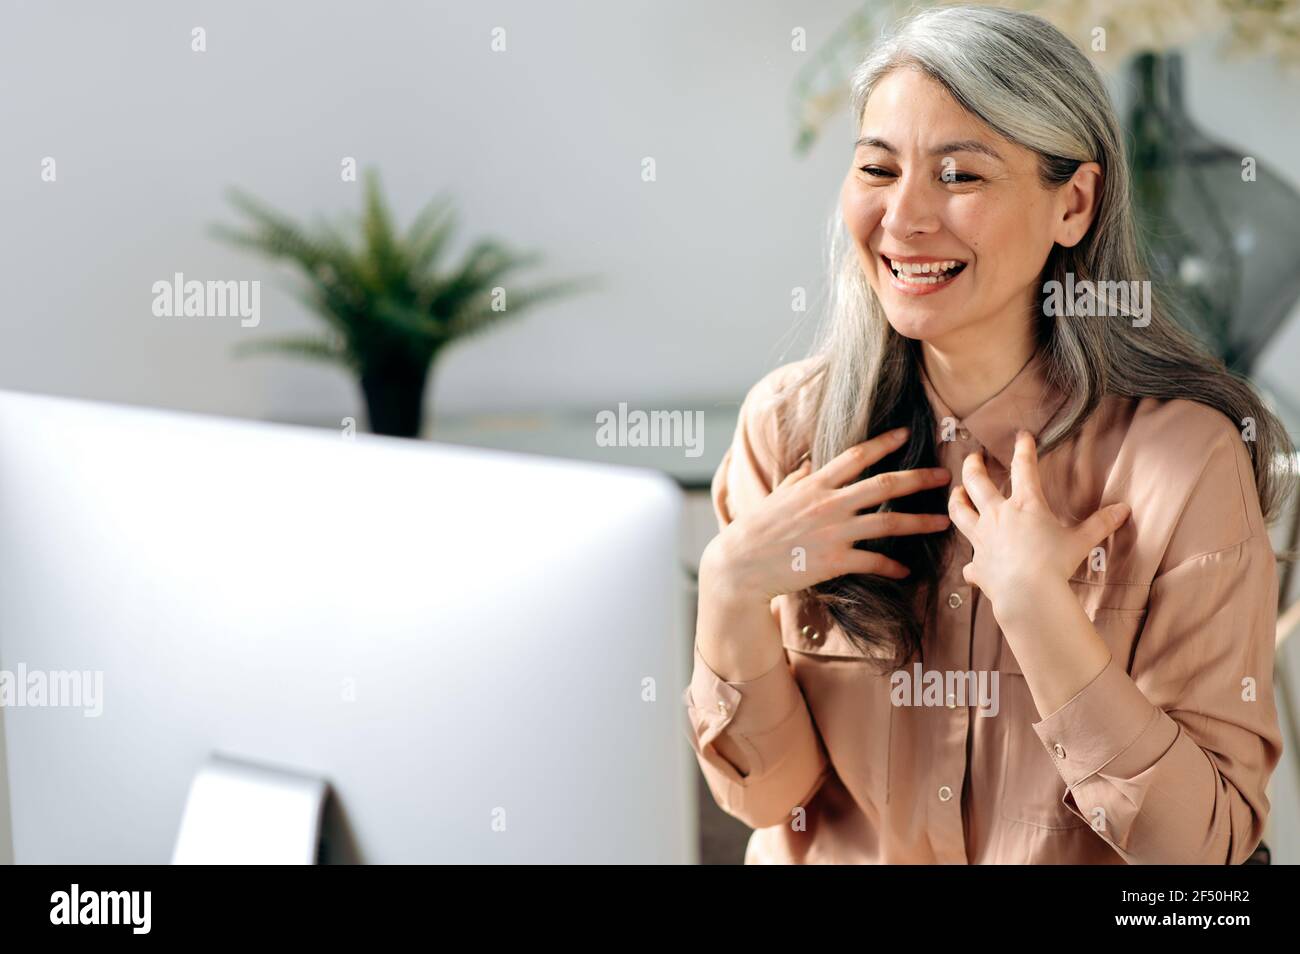 Selbstbewusste, erfolgreiche, schöne asiatische Frau, Managerin oder geschäftsführerin, die von zu Hause aus arbeitet, per Videokonferenz mit Mitarbeitern oder Freunden chattet, online trifft, mit den Händen gestikelt und freundlich lächelt Stockfoto